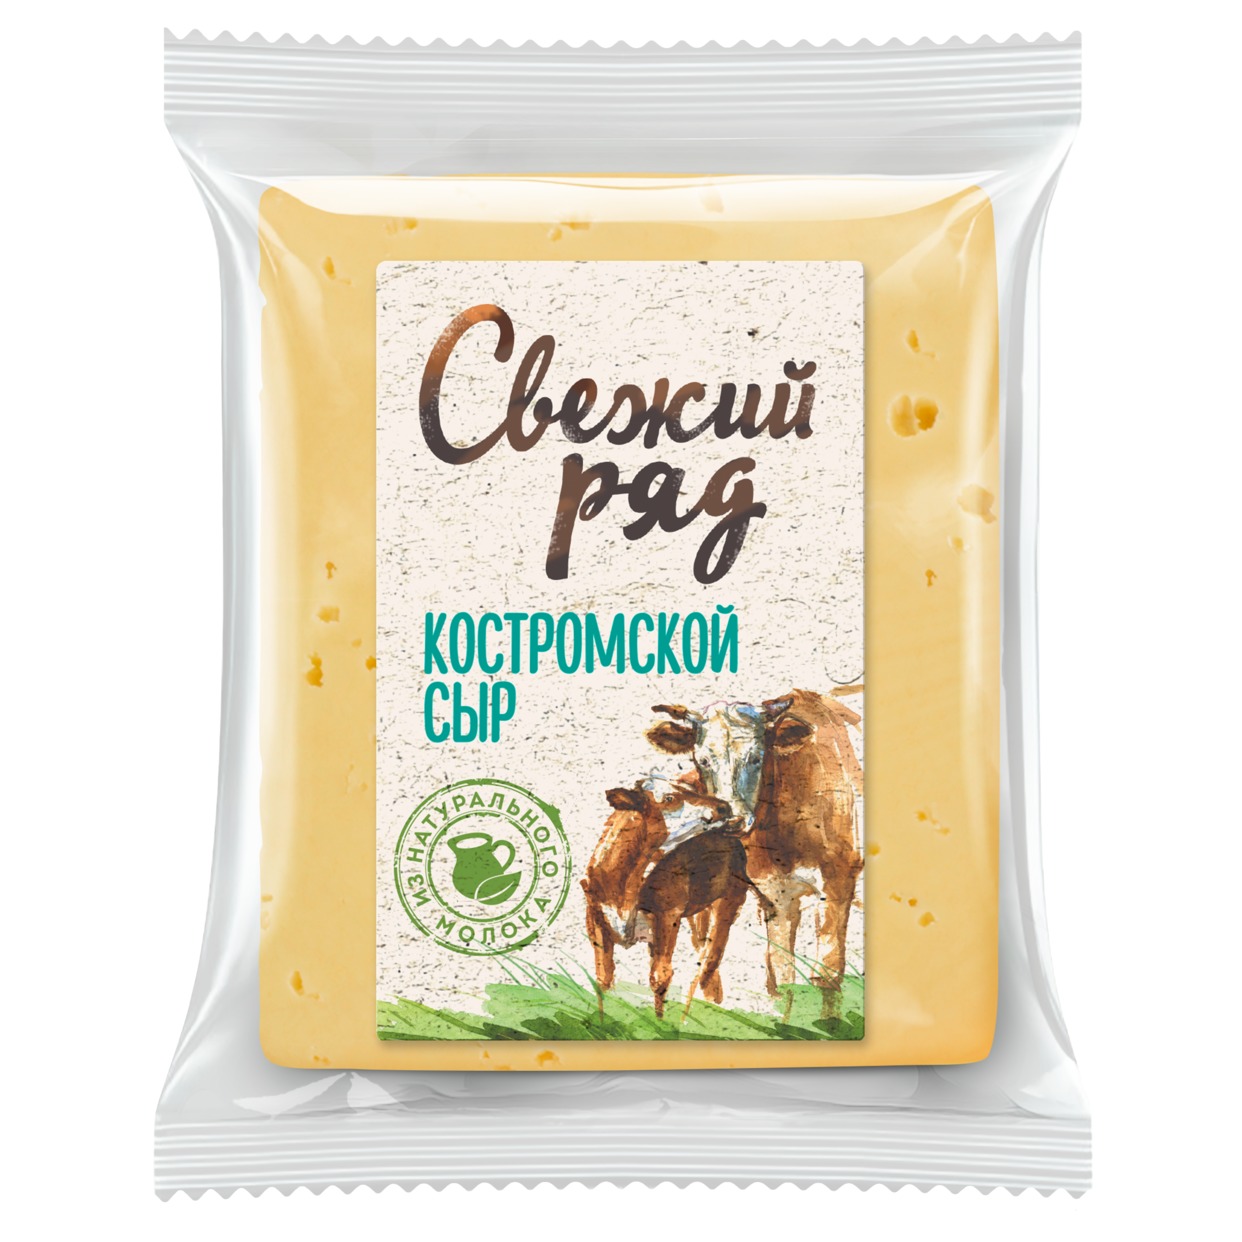 Свежий ряд. Сыр Костромской 45% 1 кг по акции в Пятерочке